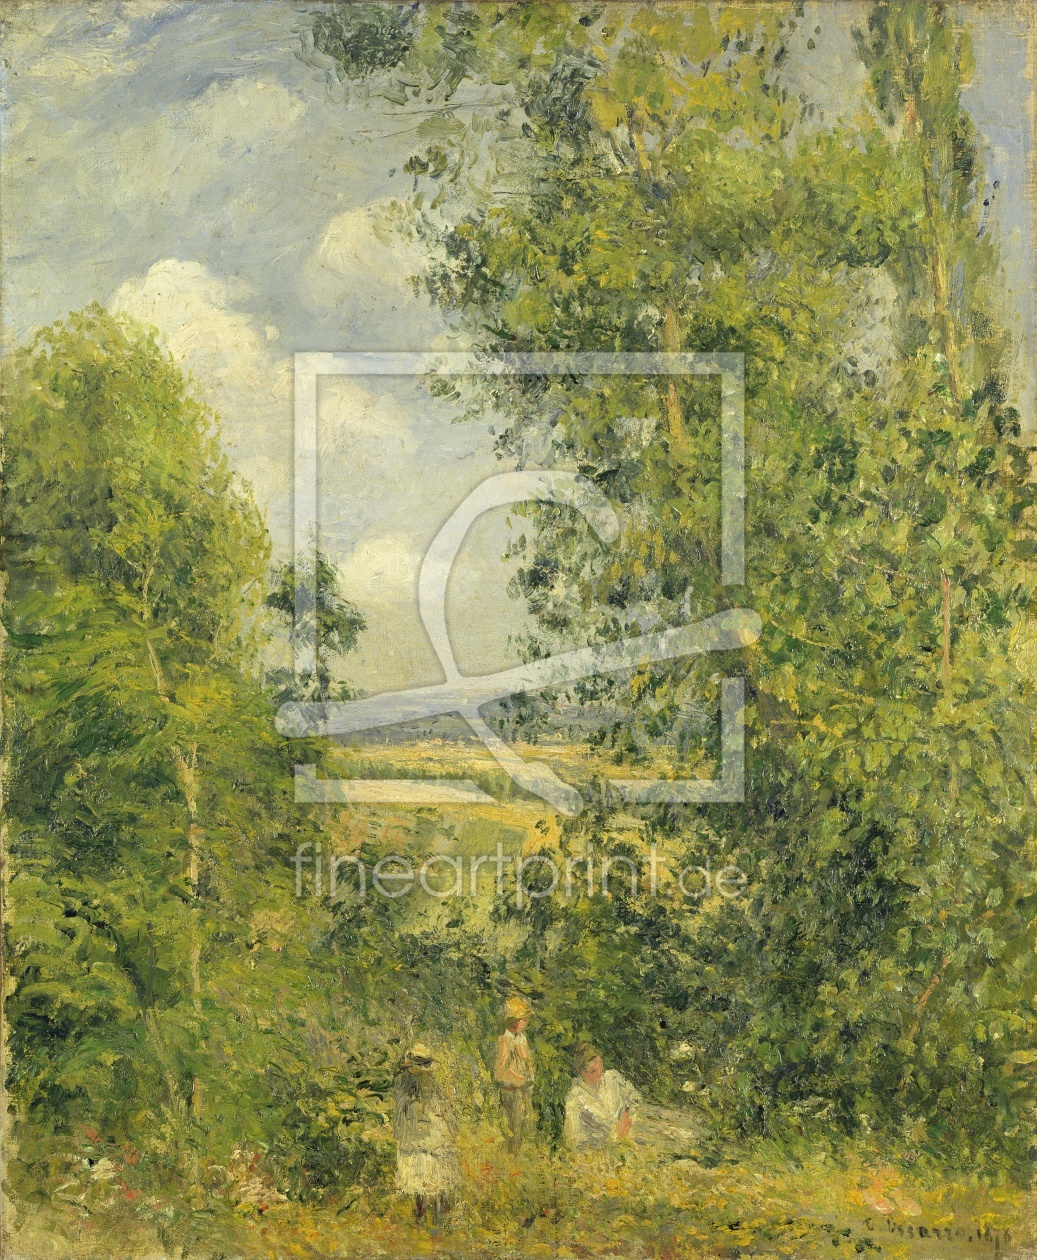 Bild-Nr.: 31000948 A Rest in the Meadow, 1878 erstellt von Pissarro, Camille